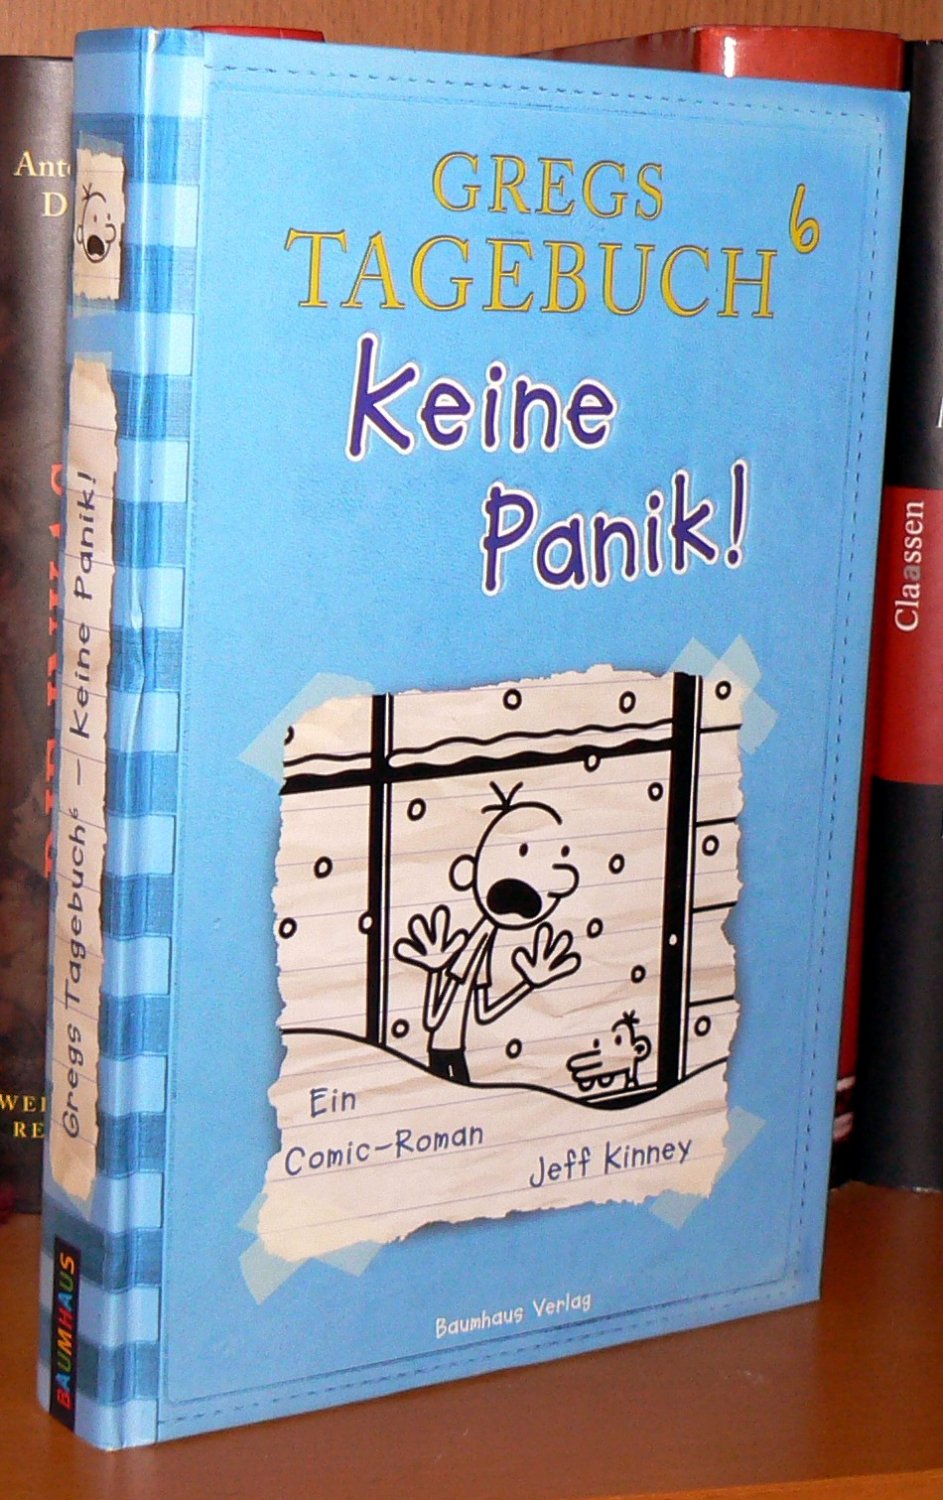 Gregs ebuch 6 Keine Panik Jeff Kinney Buch Gebraucht Kaufen A02npoch01zzi